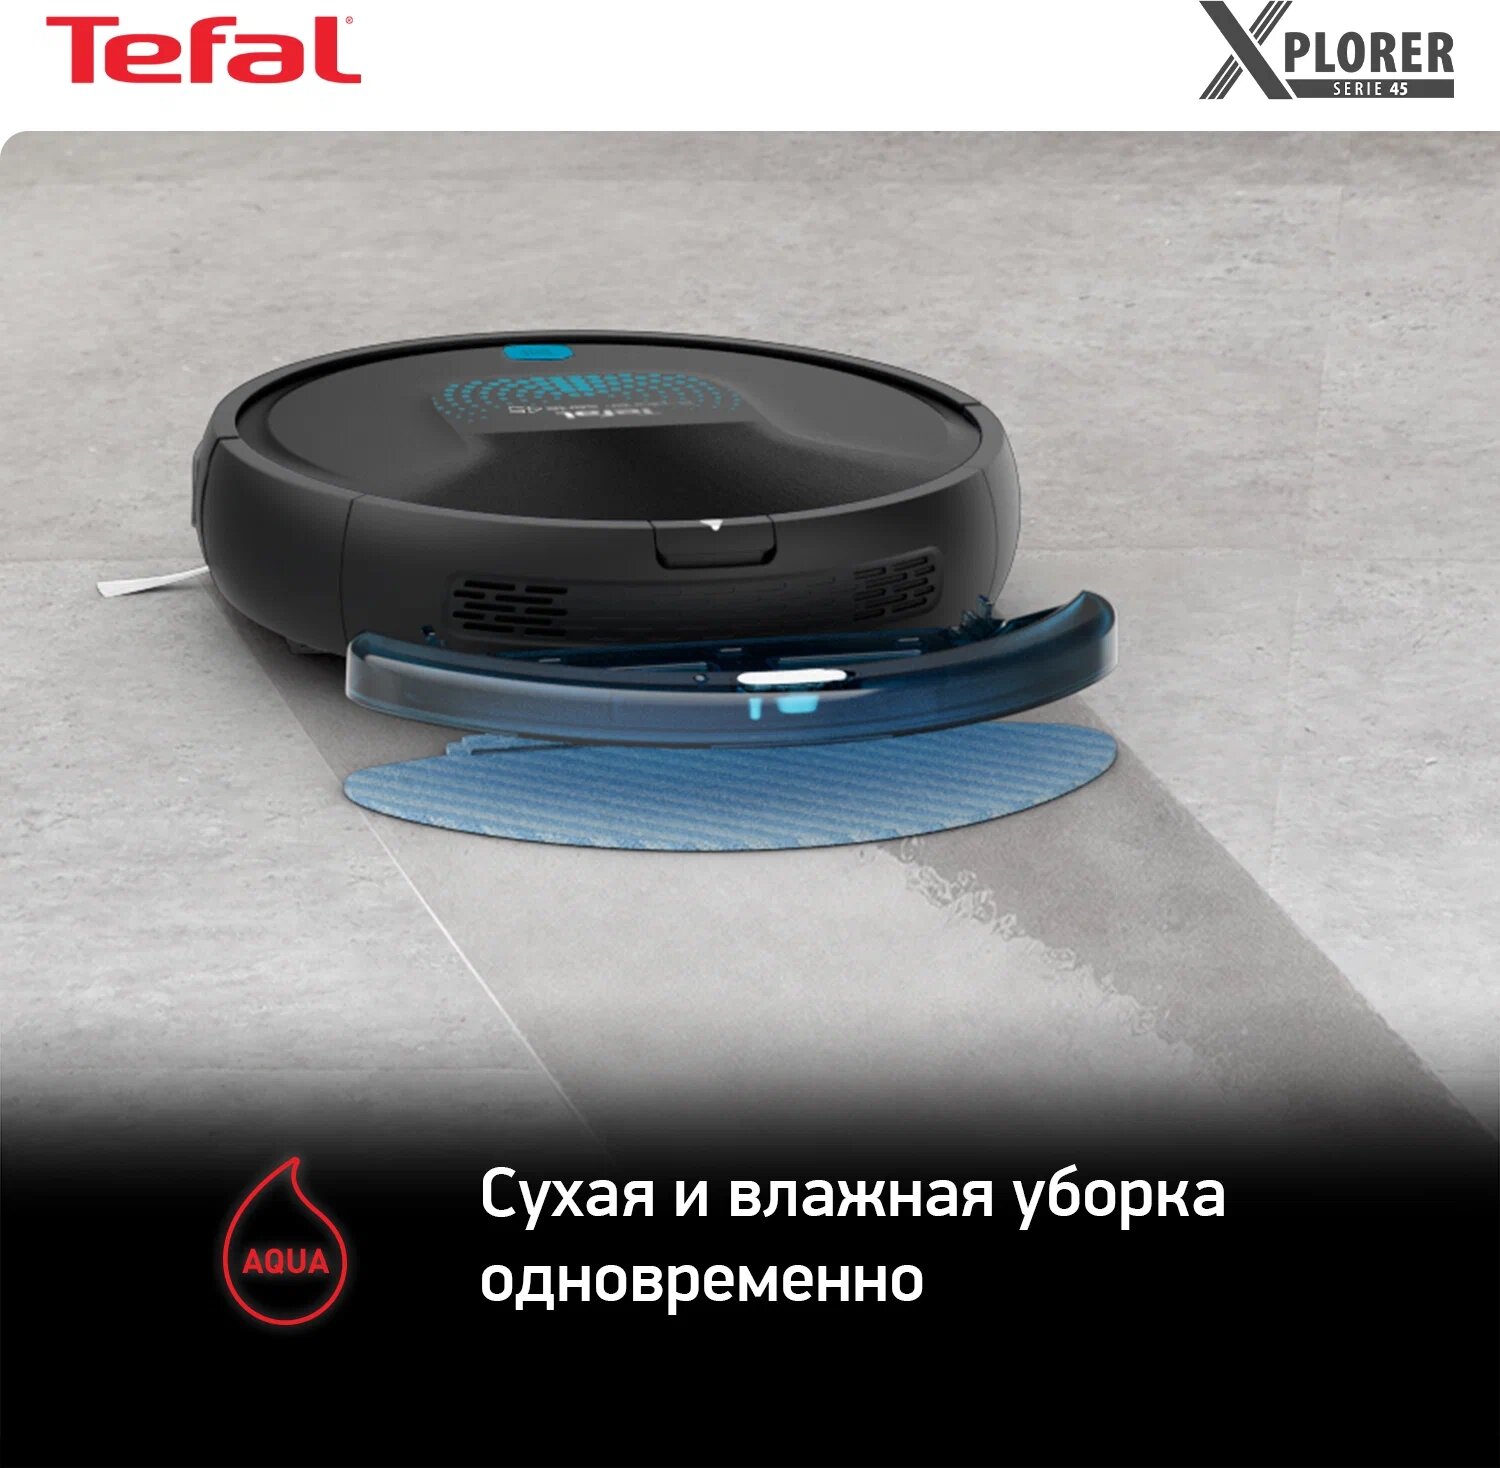 Робот-пылесос Tefal X-Plorer Serie 45 RG8275WH, черный [2211401051] - фото №15